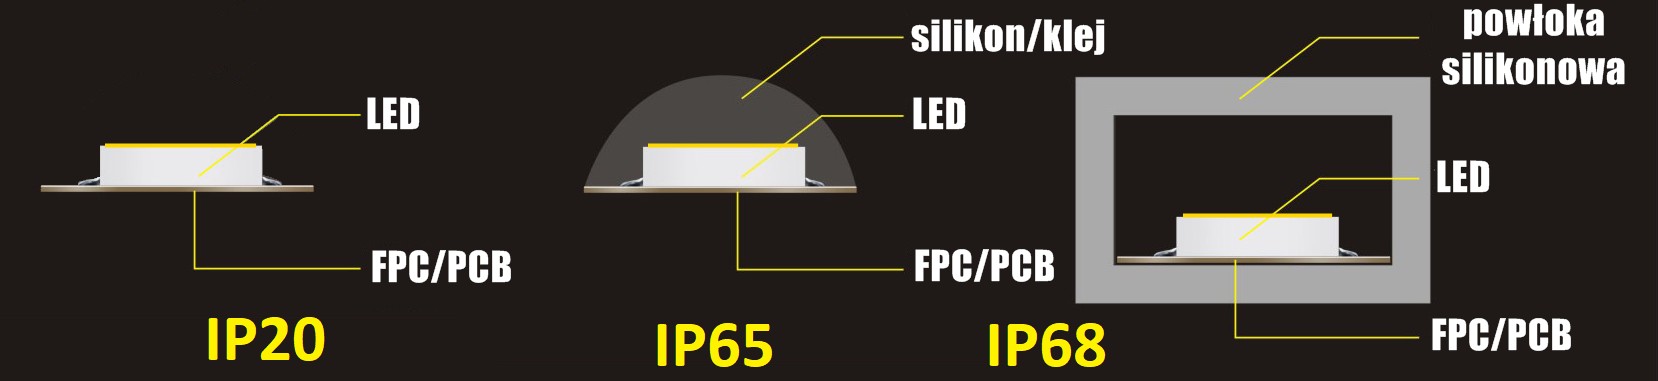 porównanie ochrony IP68